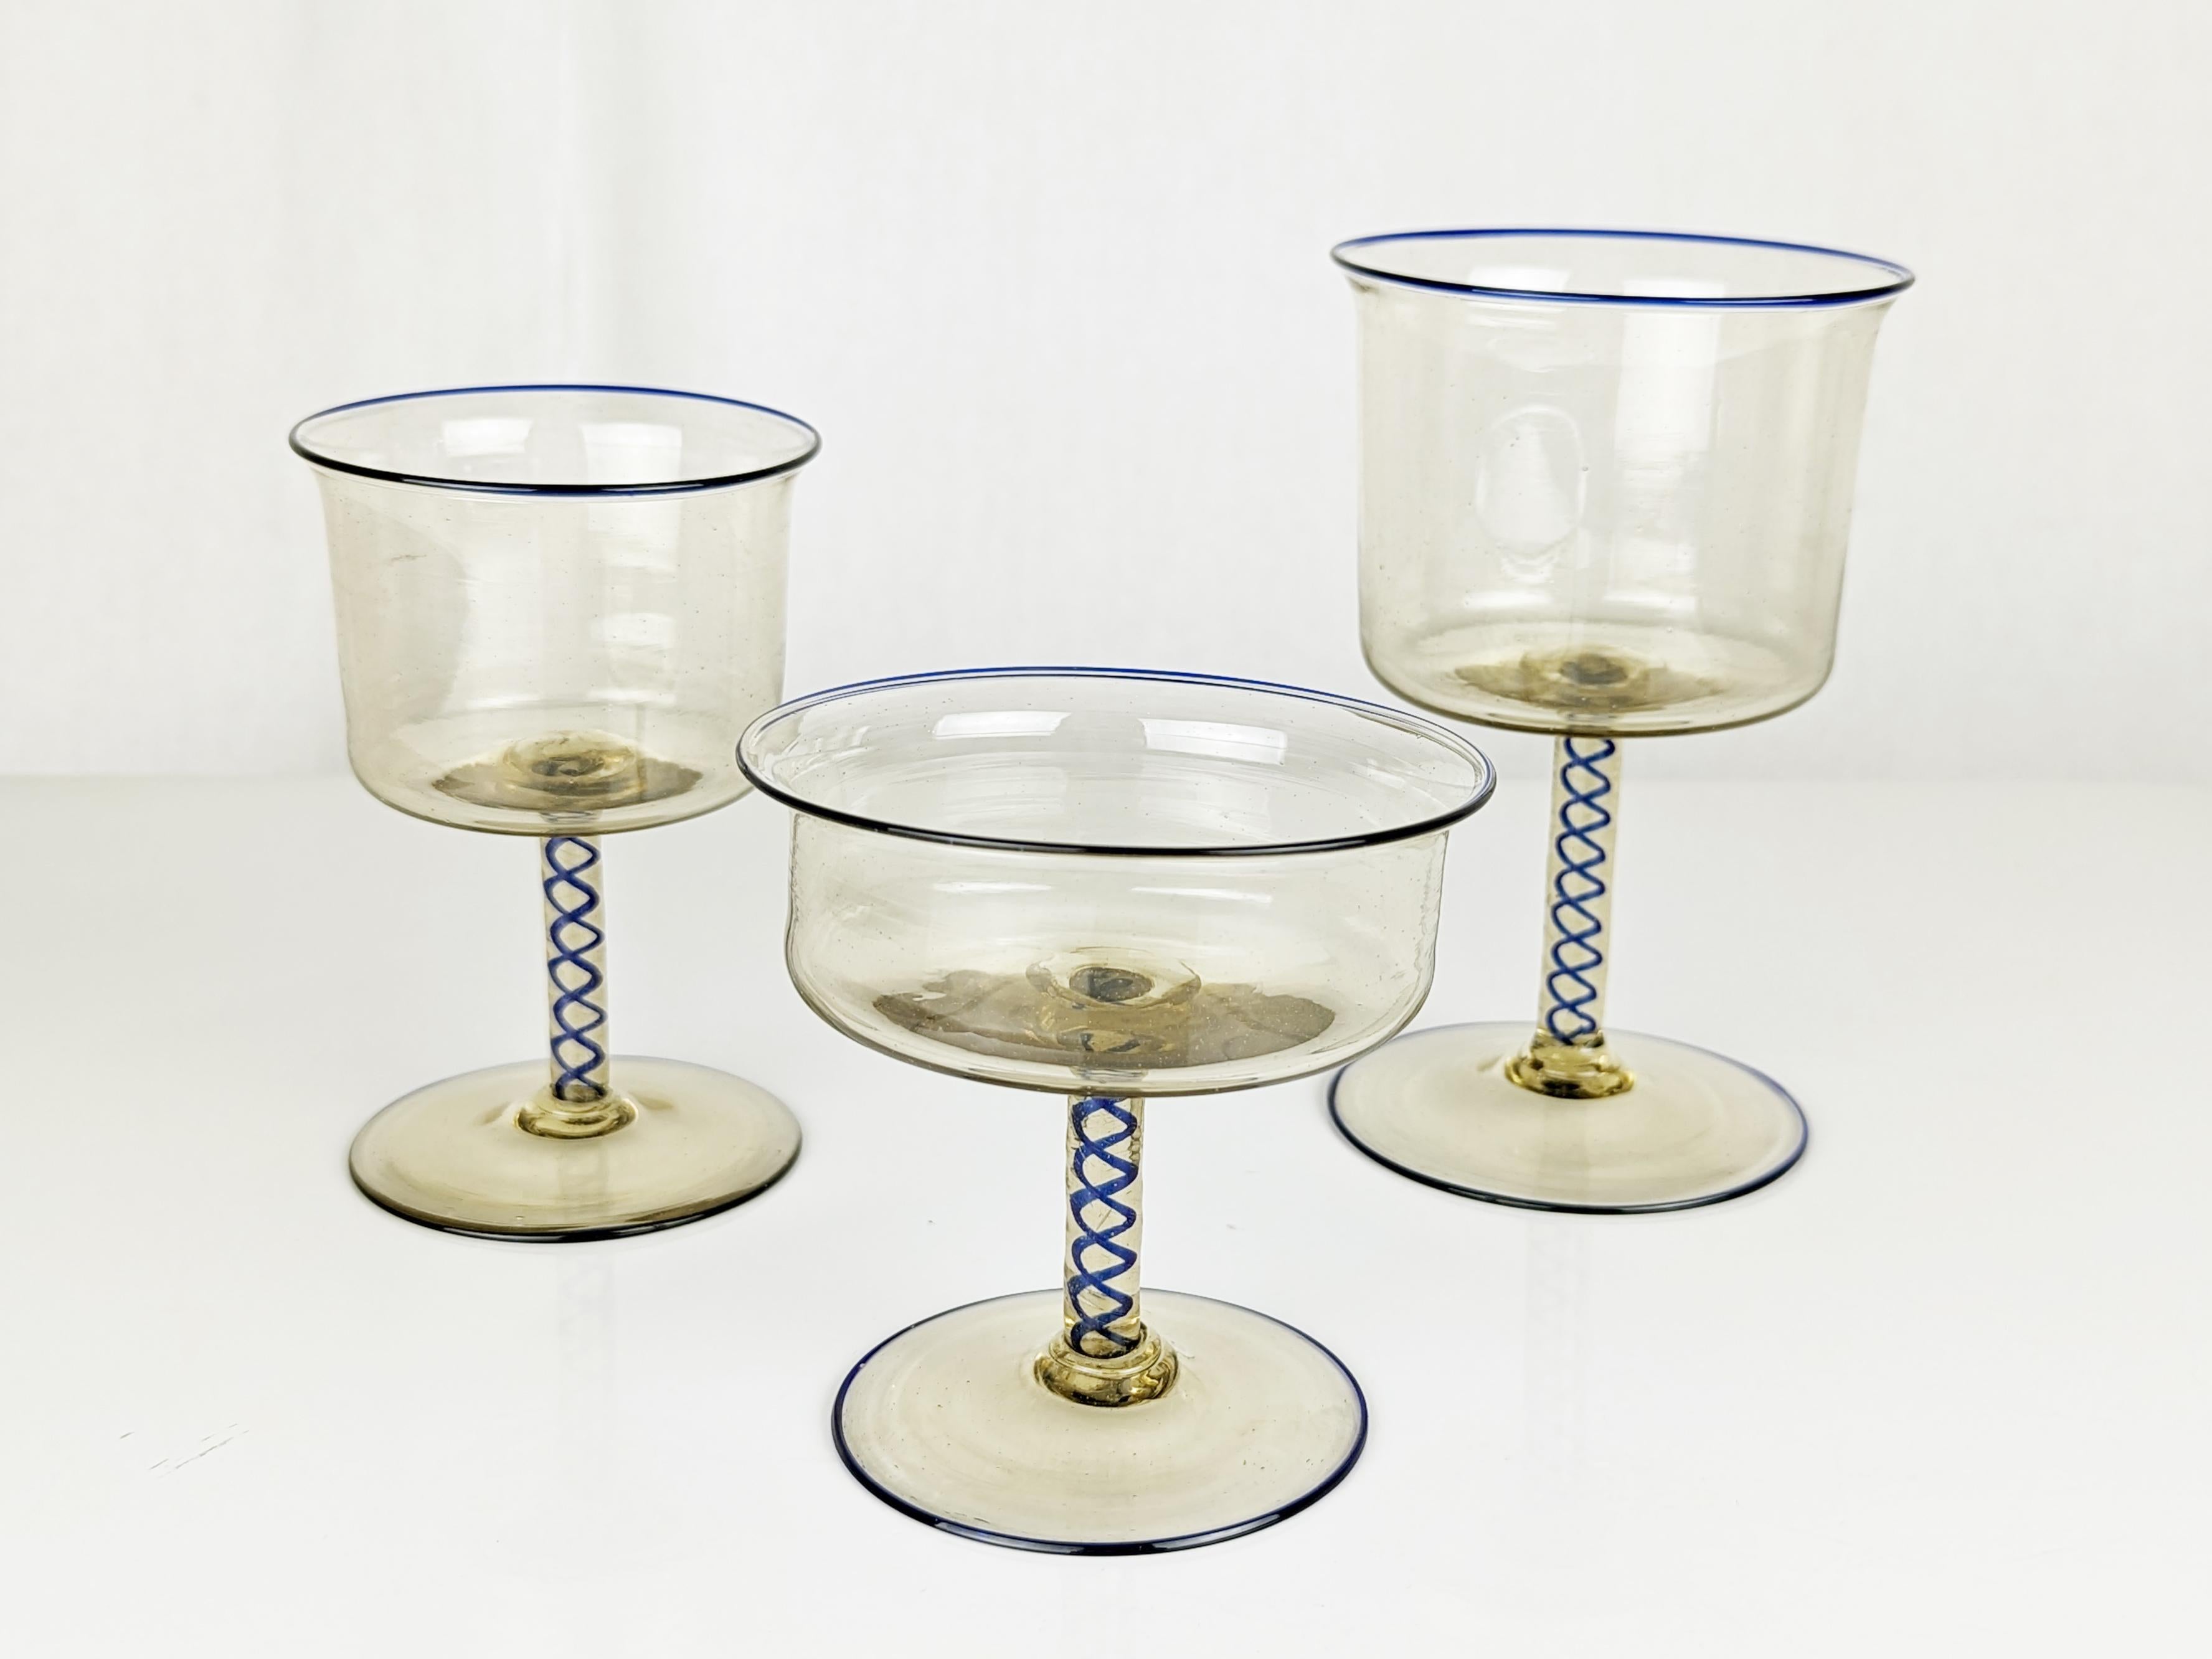 Ensemble de 18 gobelets en verre de Murano fabriqués par Vittorio Zecchin pour la verrerie Pauly & co de Murano dans les années 1930.
L'ensemble est composé de 3 verres de dimensions différentes ( cm 14h x 8,7 ;  cm 11,5h x 7,7d ; cm 9,3h x 9,3d )